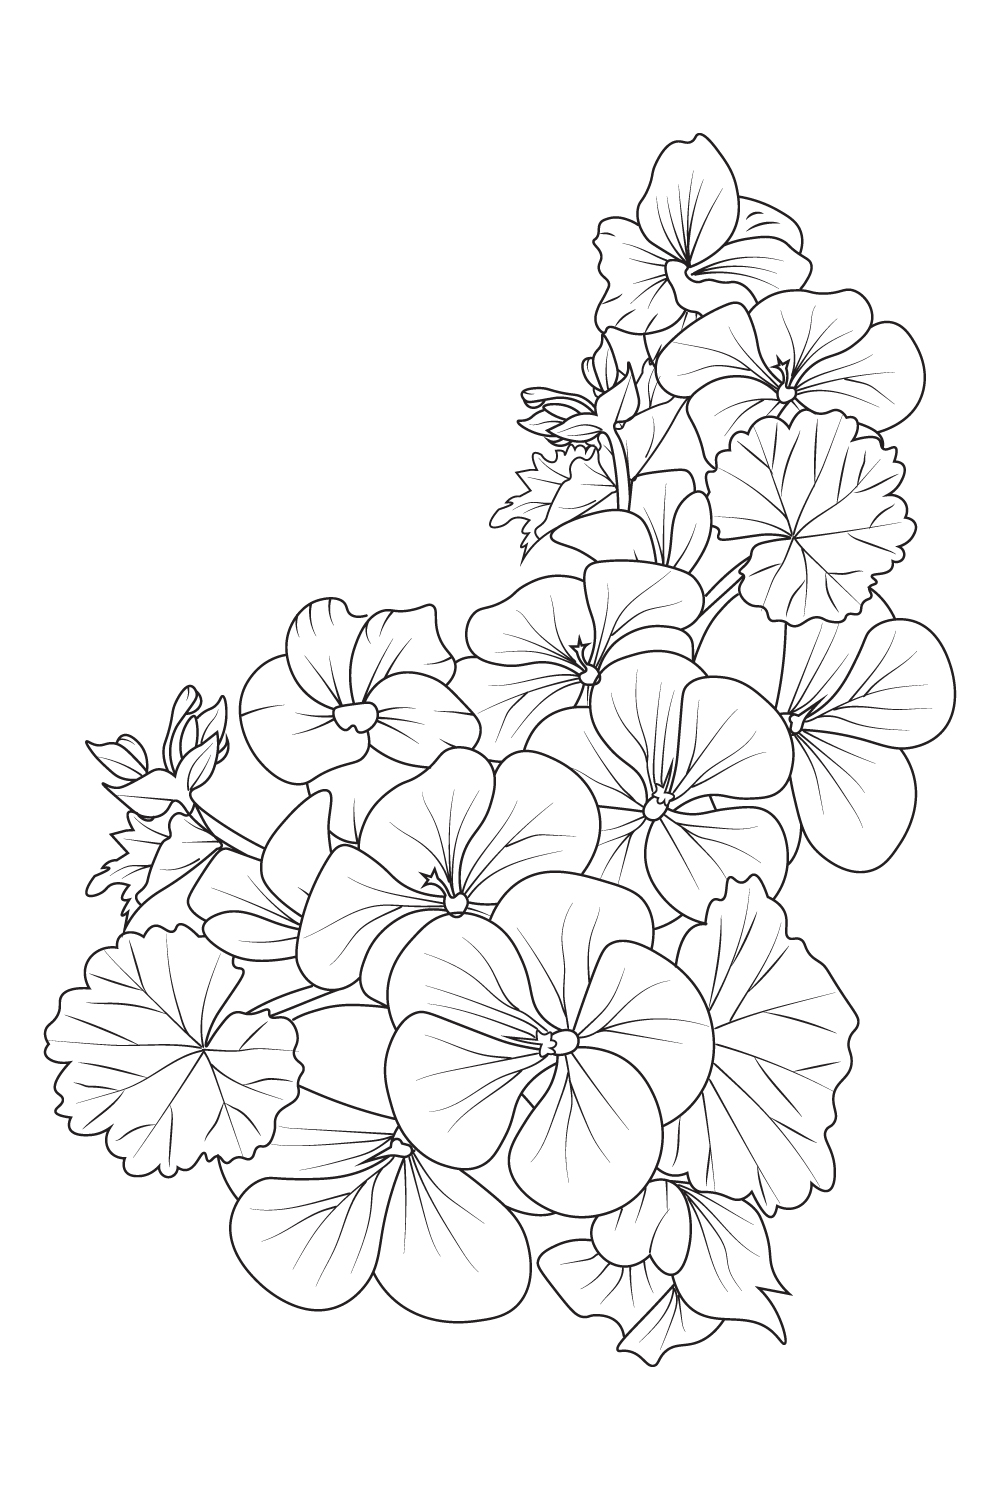 Geranium flower bouquet, pelargonium geranium, geranium drawing, geranium drawing easy, flower cluster drawing Easy flower coloring pages, Cute flower coloring pages, pinterest preview image.